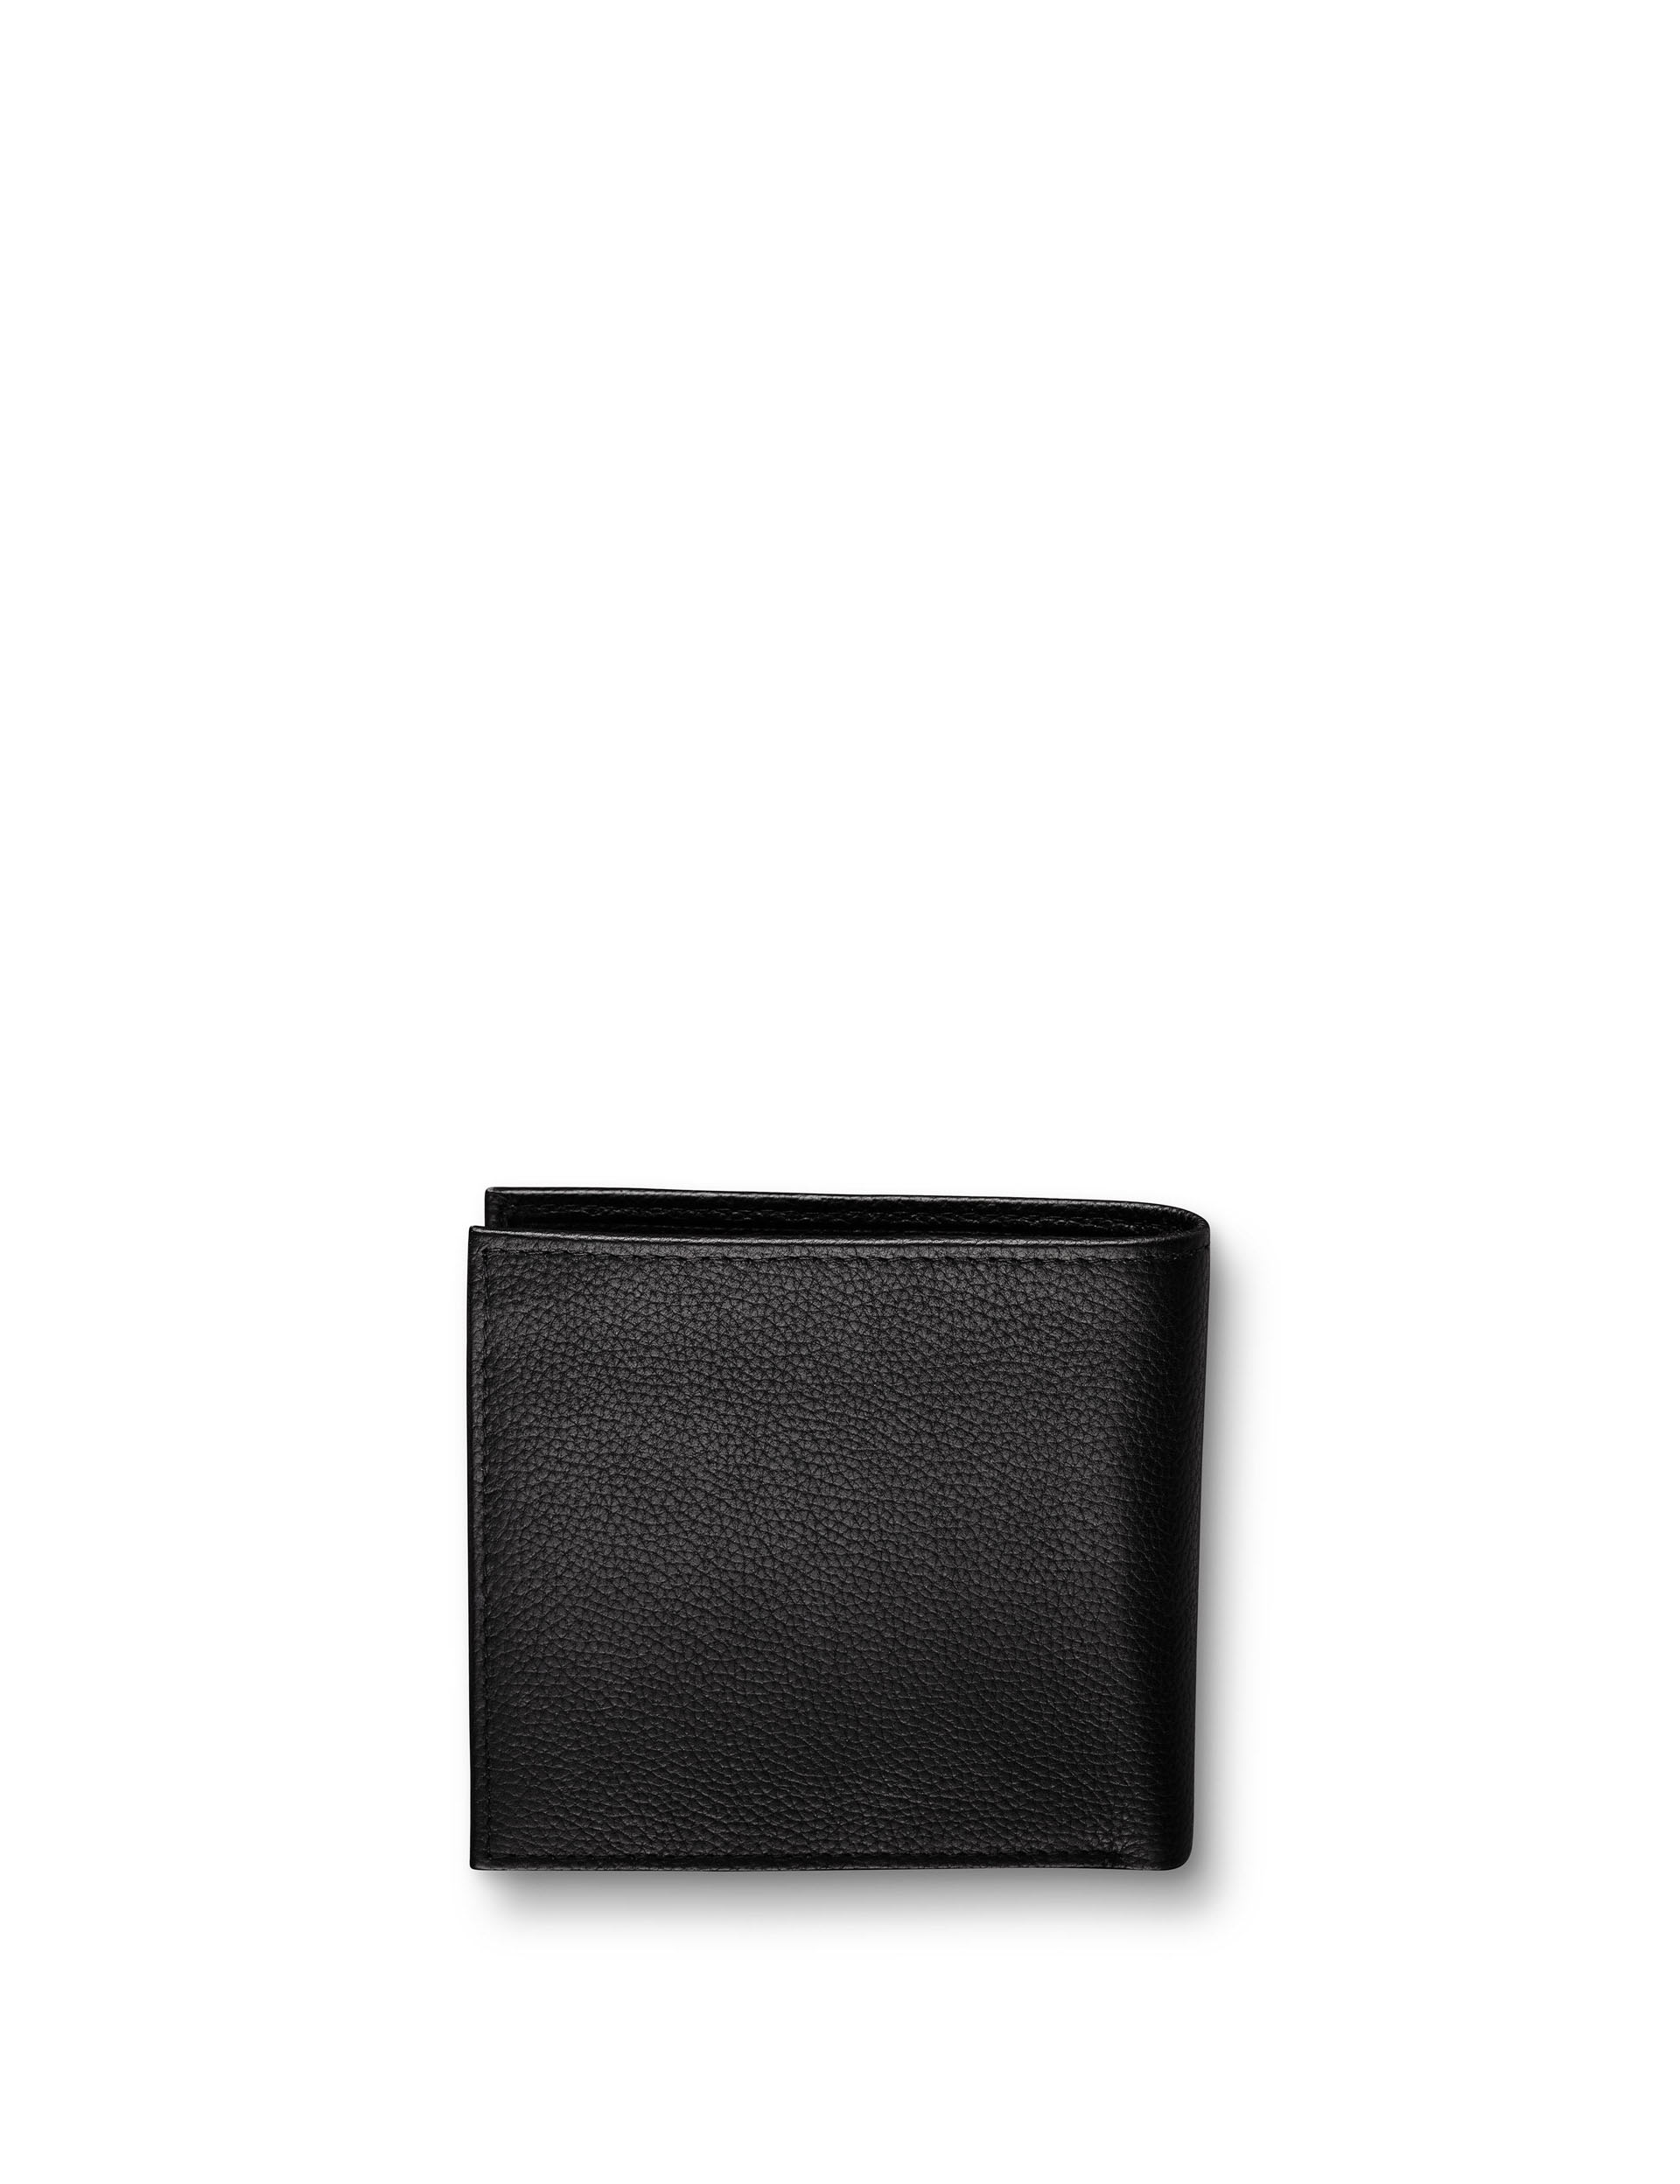 Leather Pebble Grain Bi-fold Wallet 1 of 3